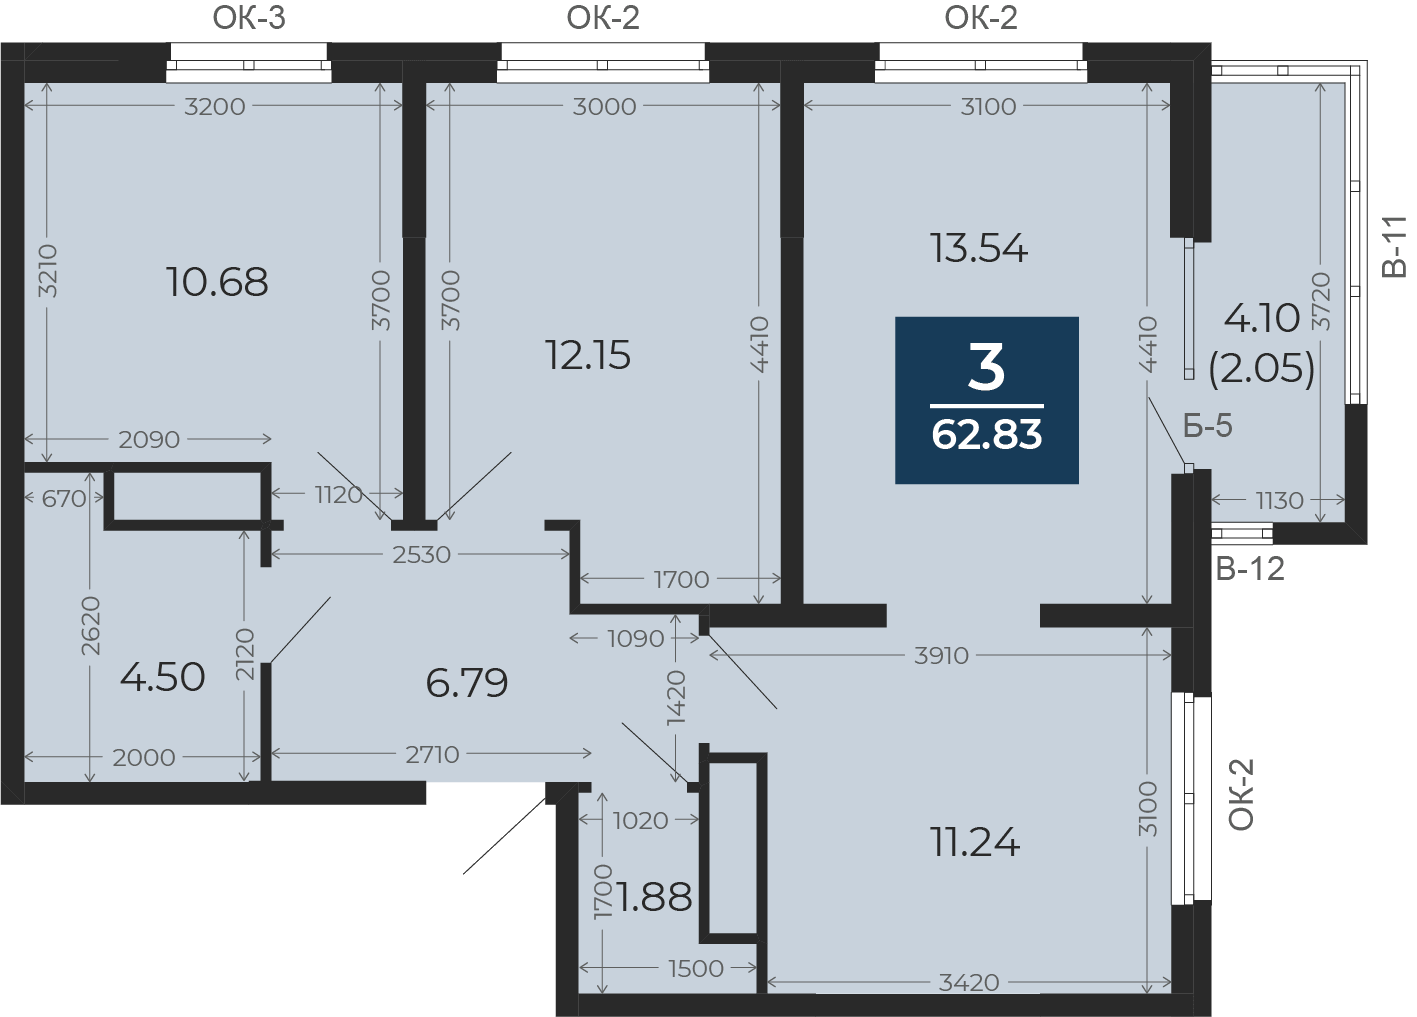 Квартира № 112, 3-комнатная, 62.83 кв. м, 17 этаж